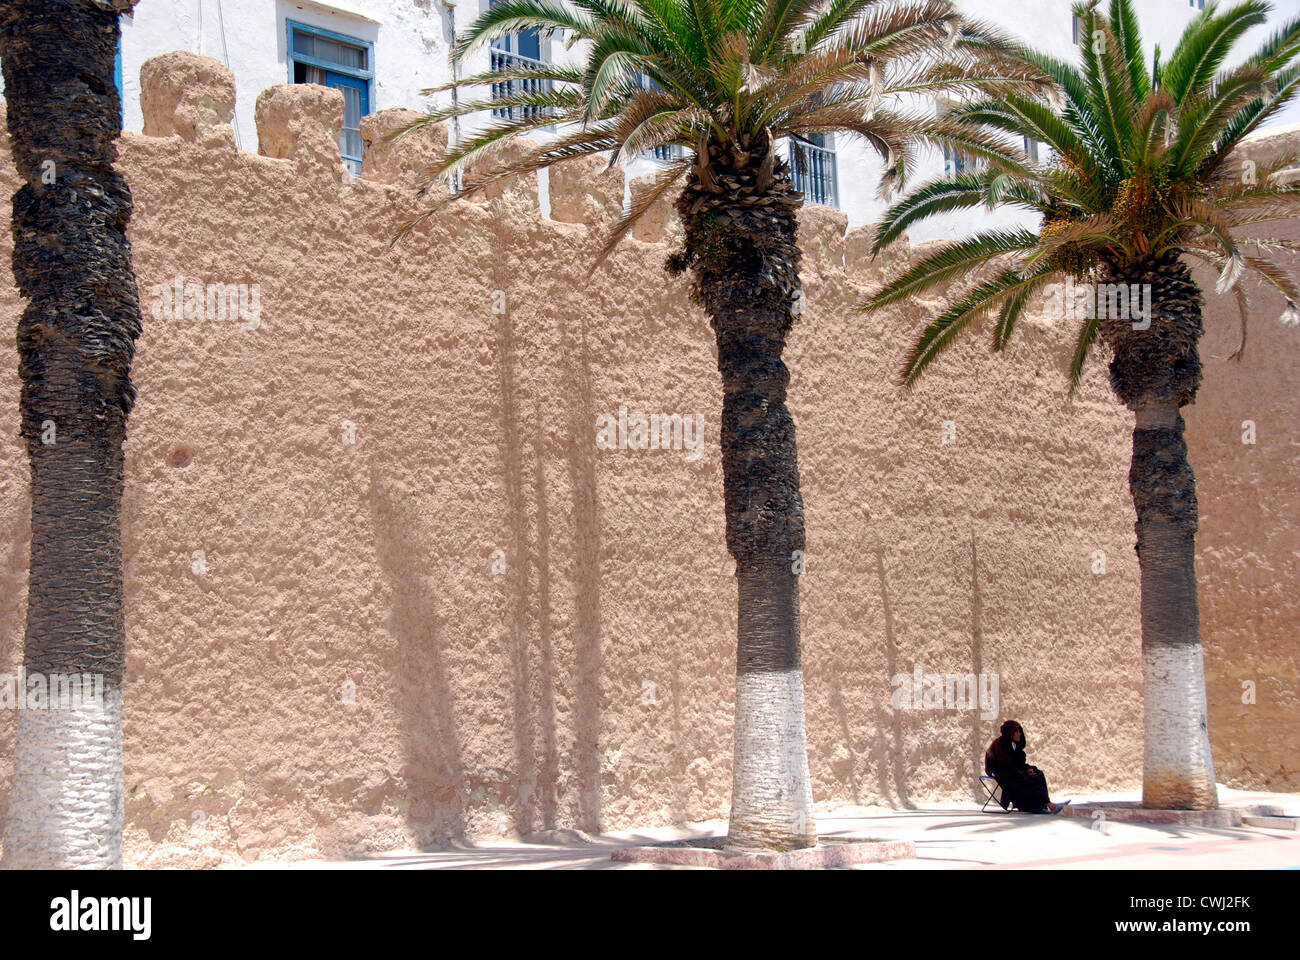 Mur de la médina d'Essaouira avec palmiers et figurine solitaire ; Maroc Banque D'Images